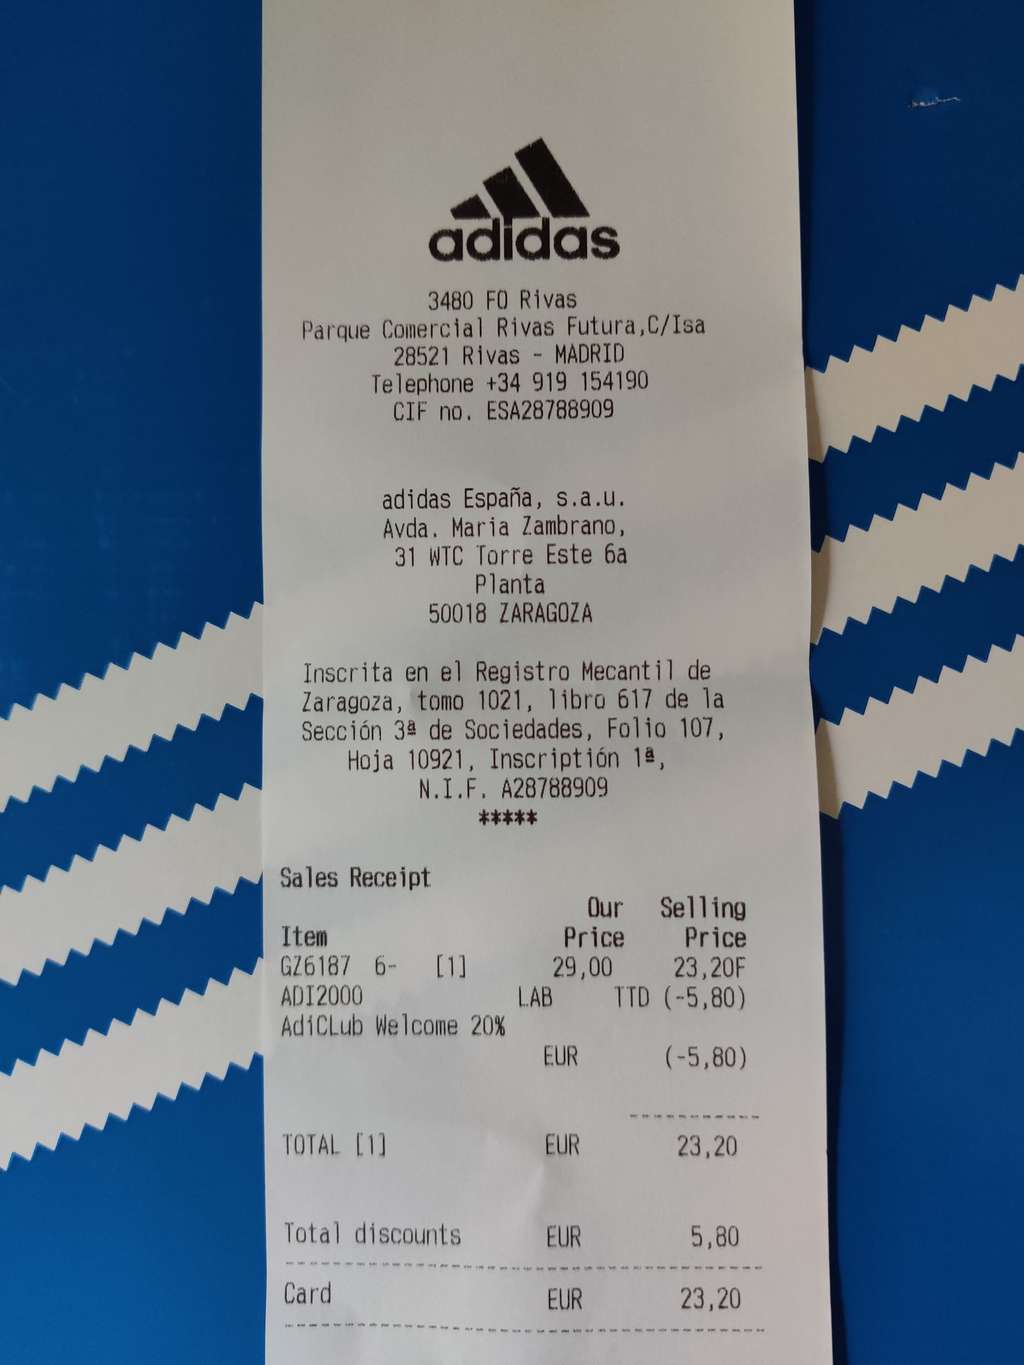 Ánimo Pedagogía Joven Adidas Adi2000 moradas y azules 29€ en Outlet de Adidas Rivas Vaciamadrid »  Chollometro